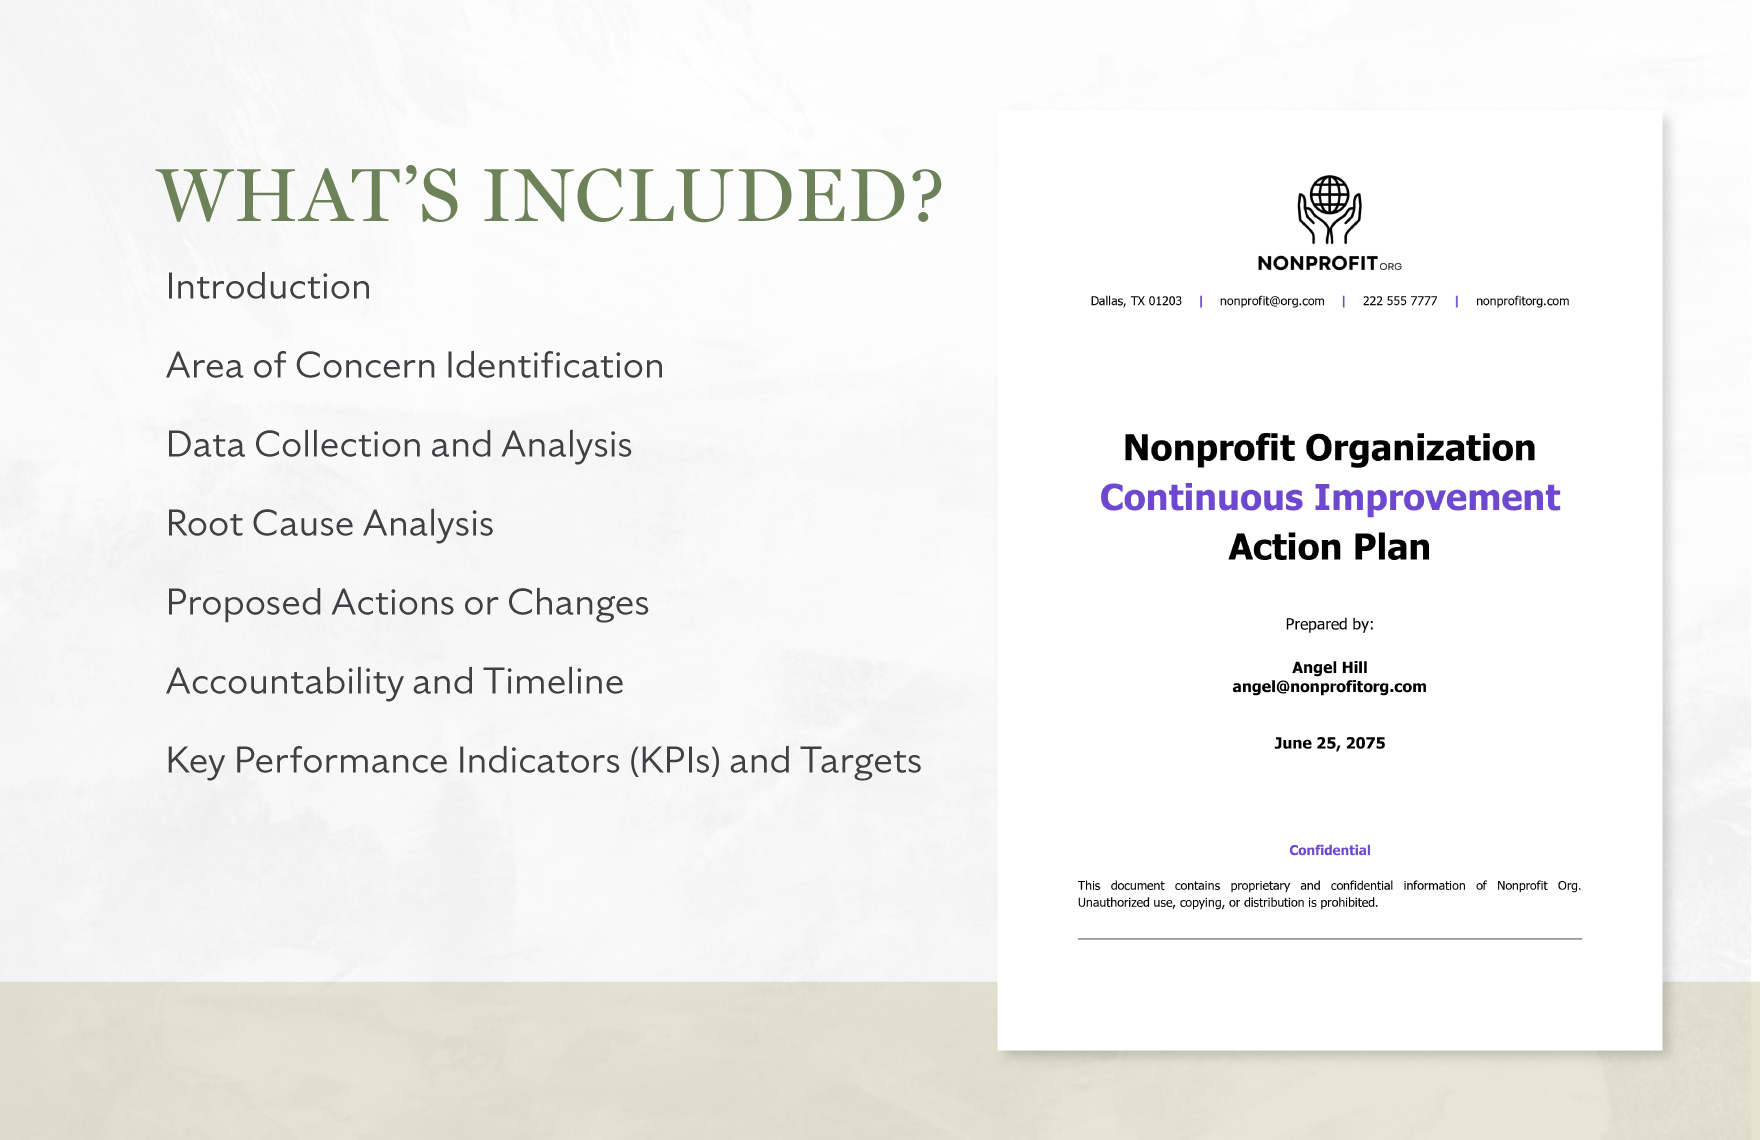 Nonprofit Organization Continuous Improvement Action Plan Template